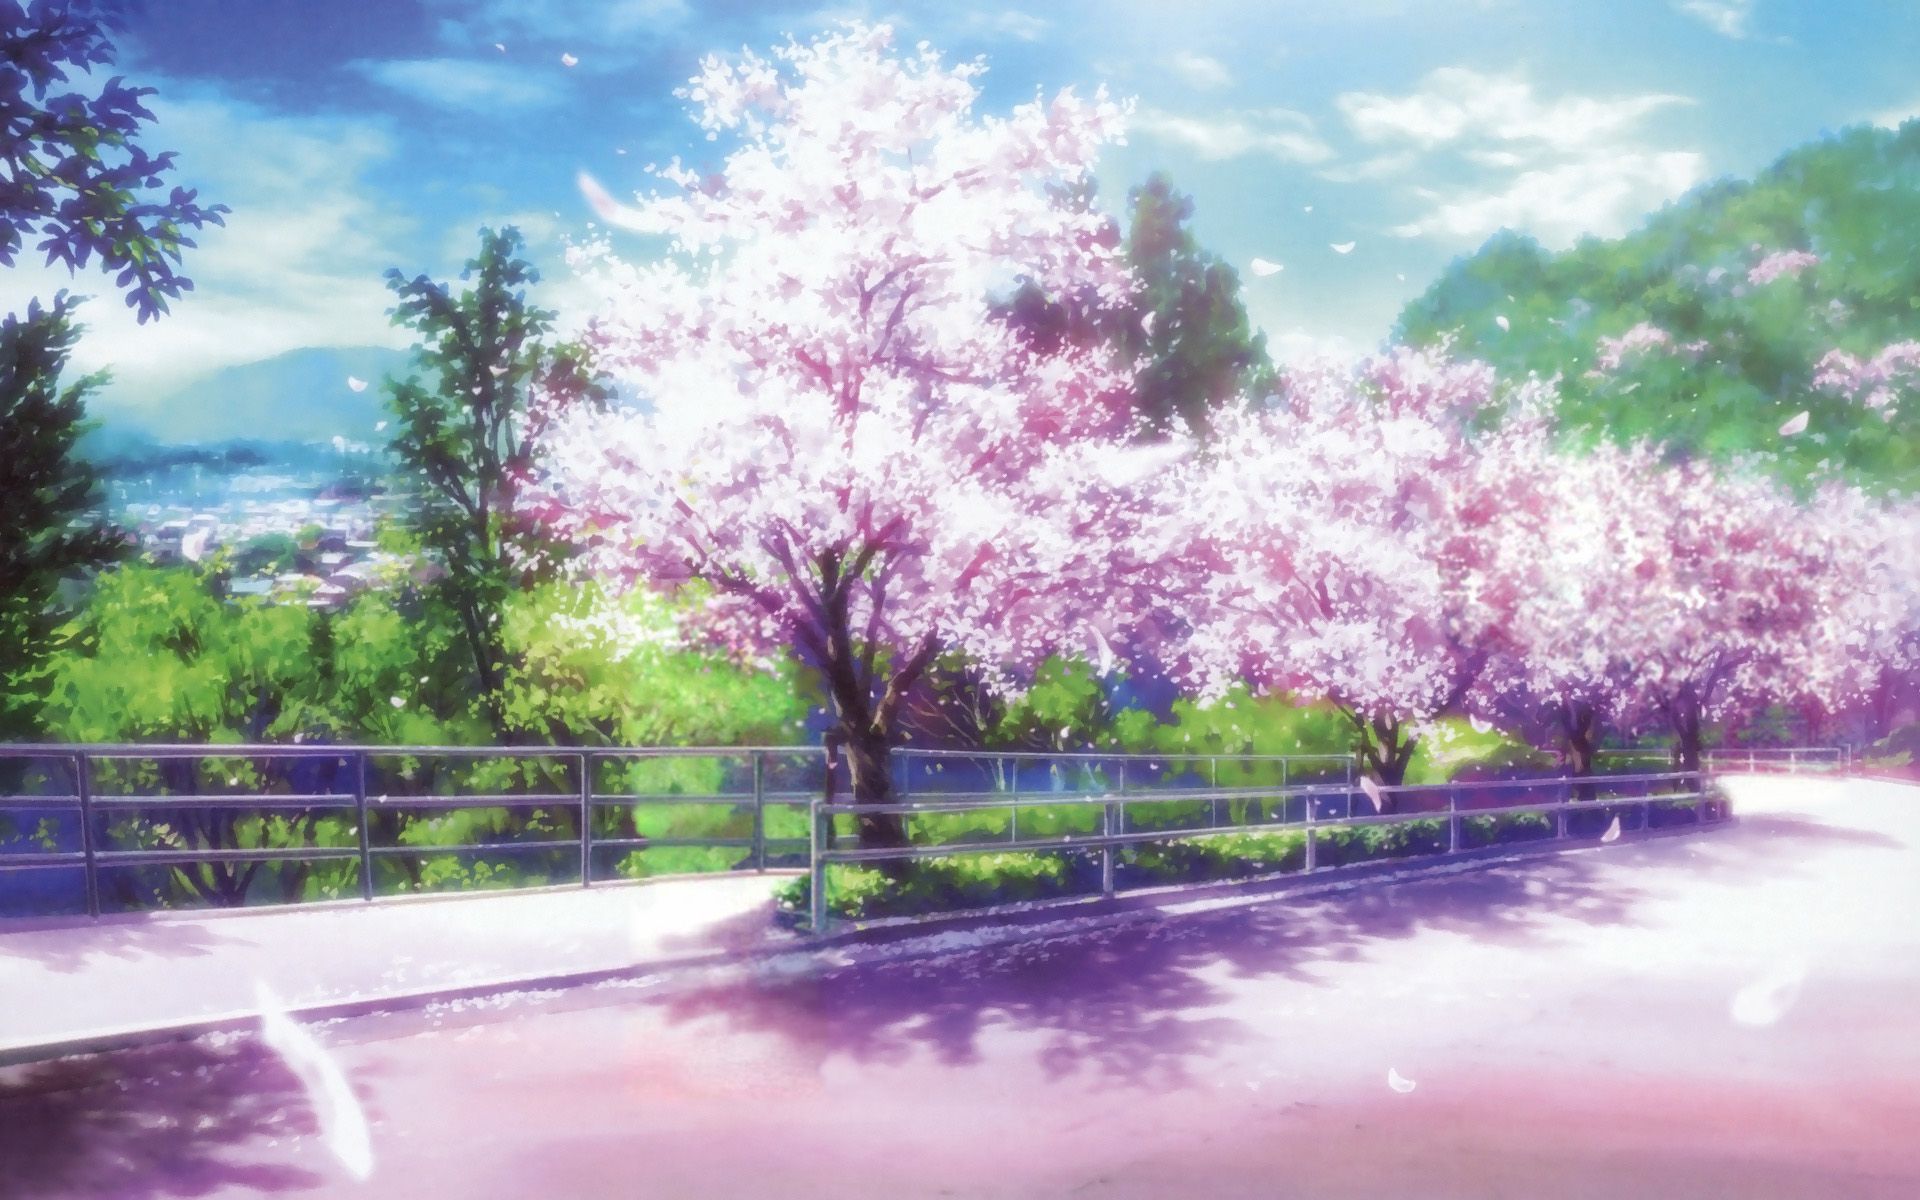 Cherry Blossom Desktop Background. Apple Blossom Wallpaper, Cherry Blossom Wallpaper and Sakura Blossom Wallpaper